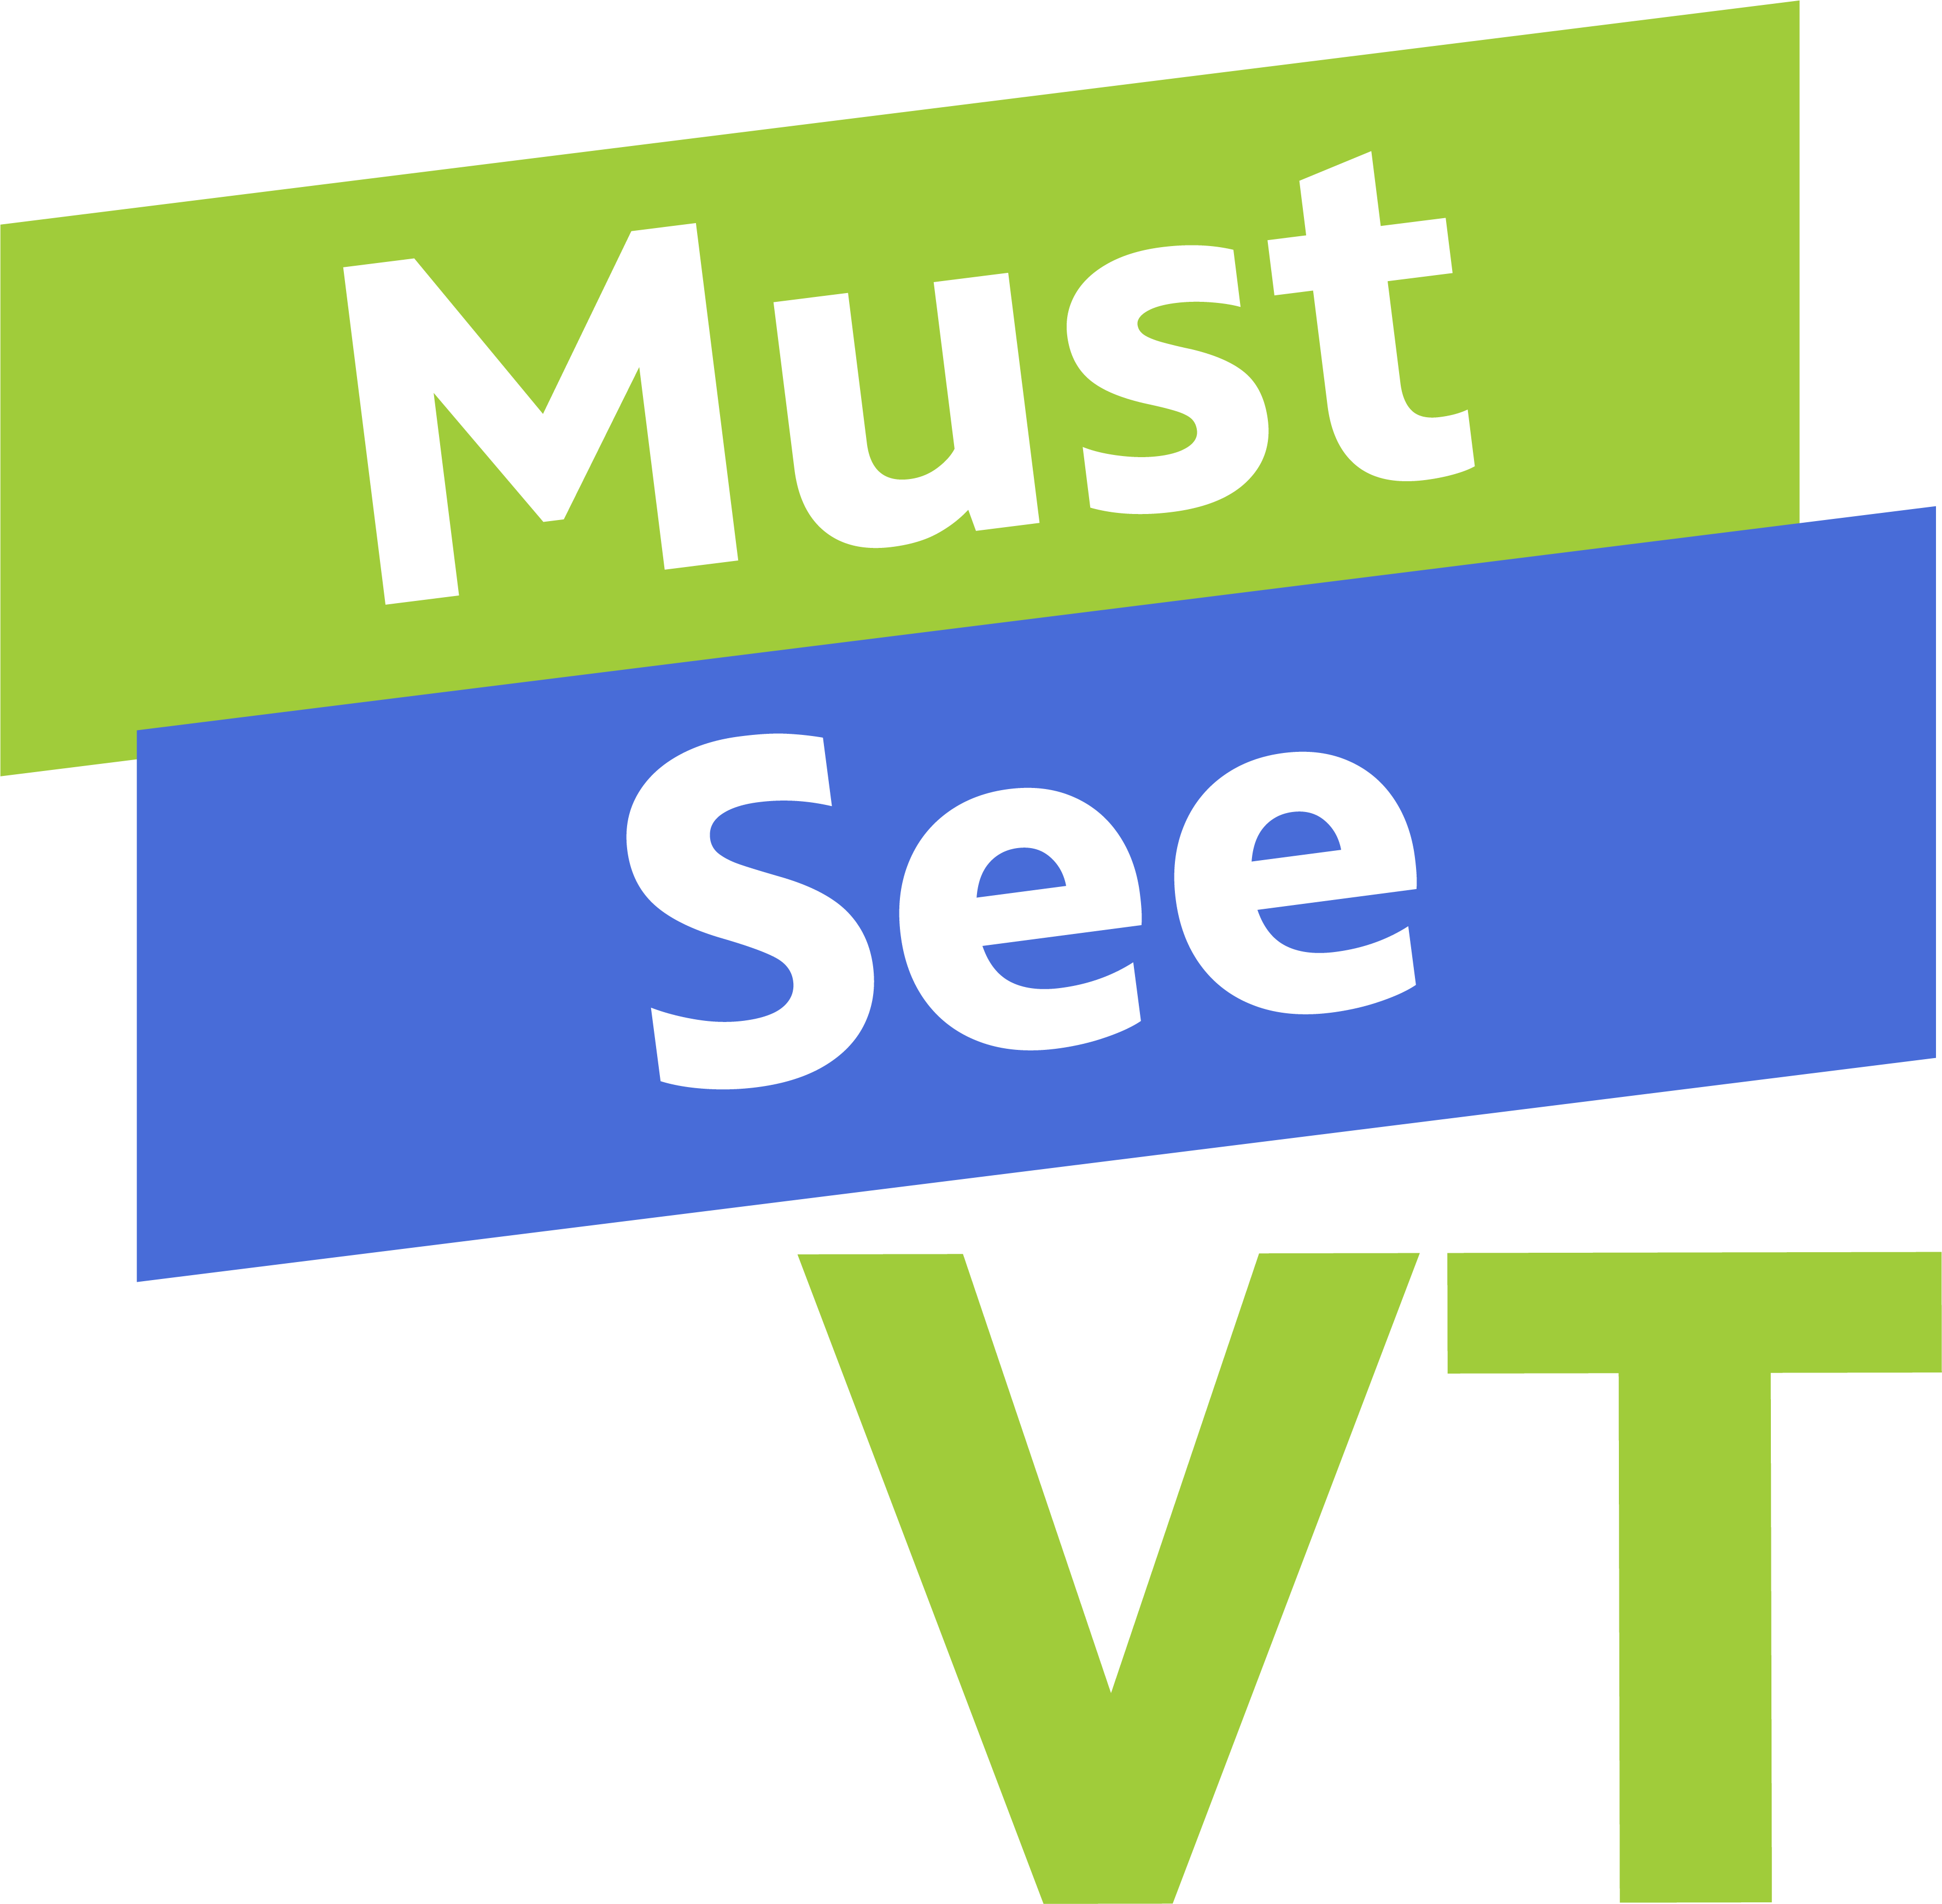 Must See VT logo